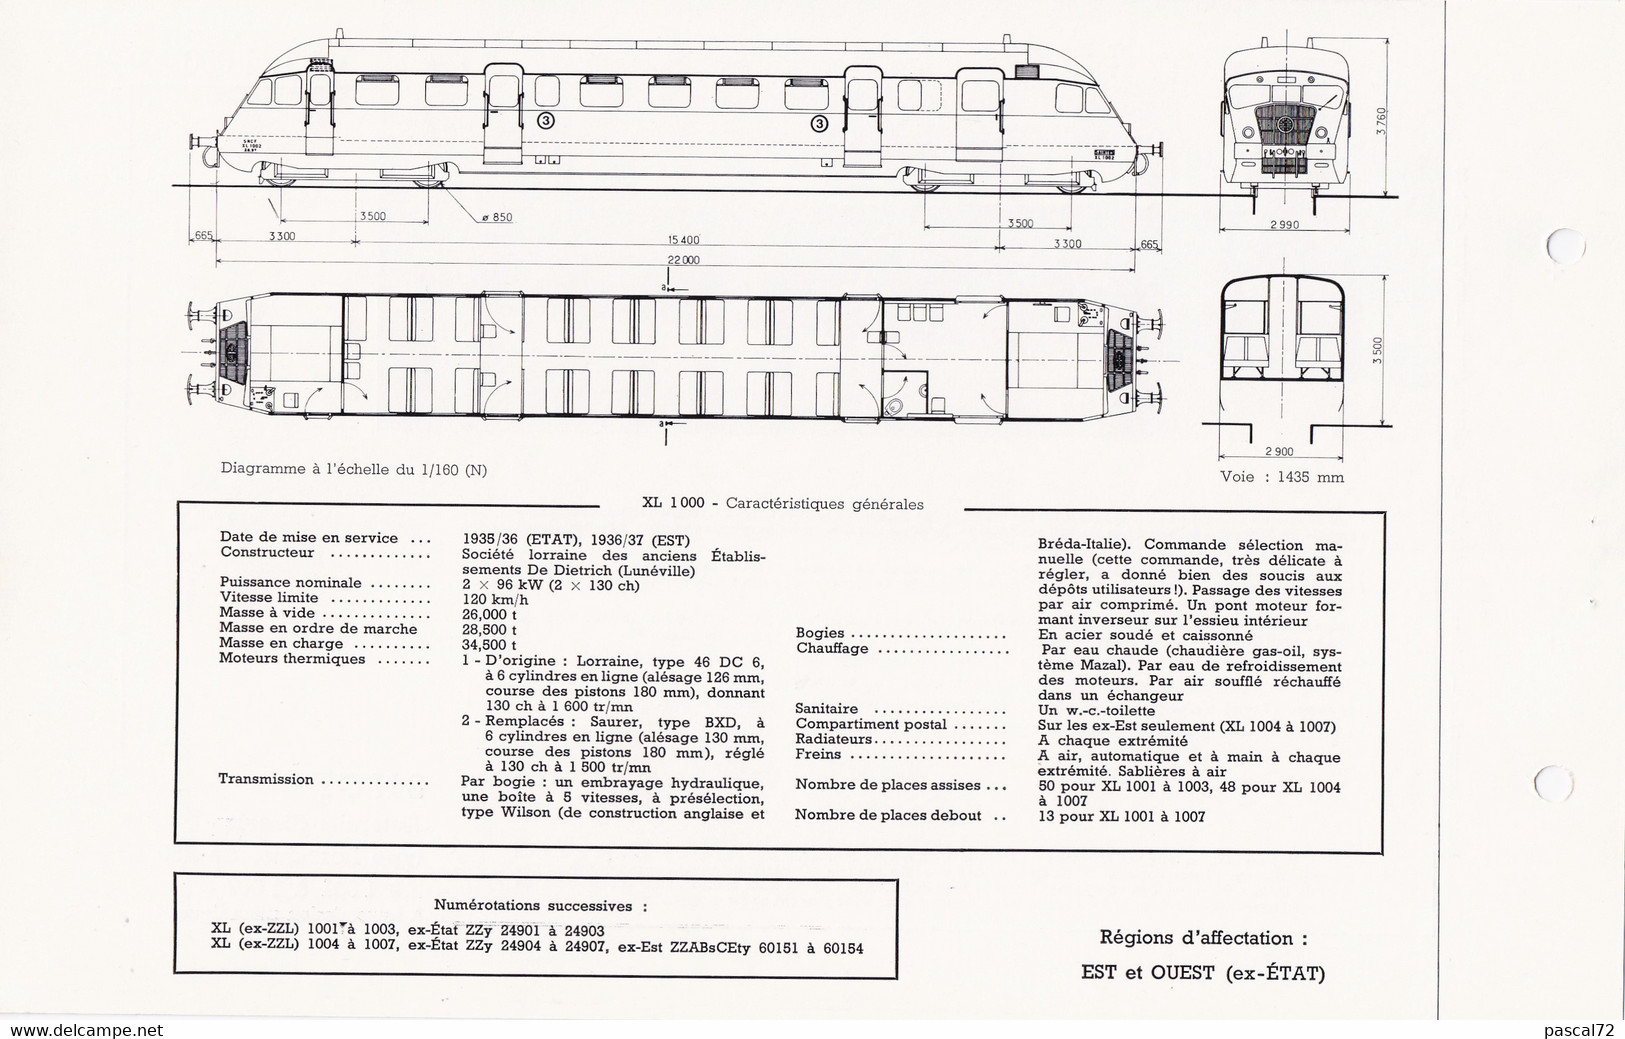 XL 1000 FICHE DOCUMENTAIRE LOCO REVUE N° 451 JUILLET 1973 - French